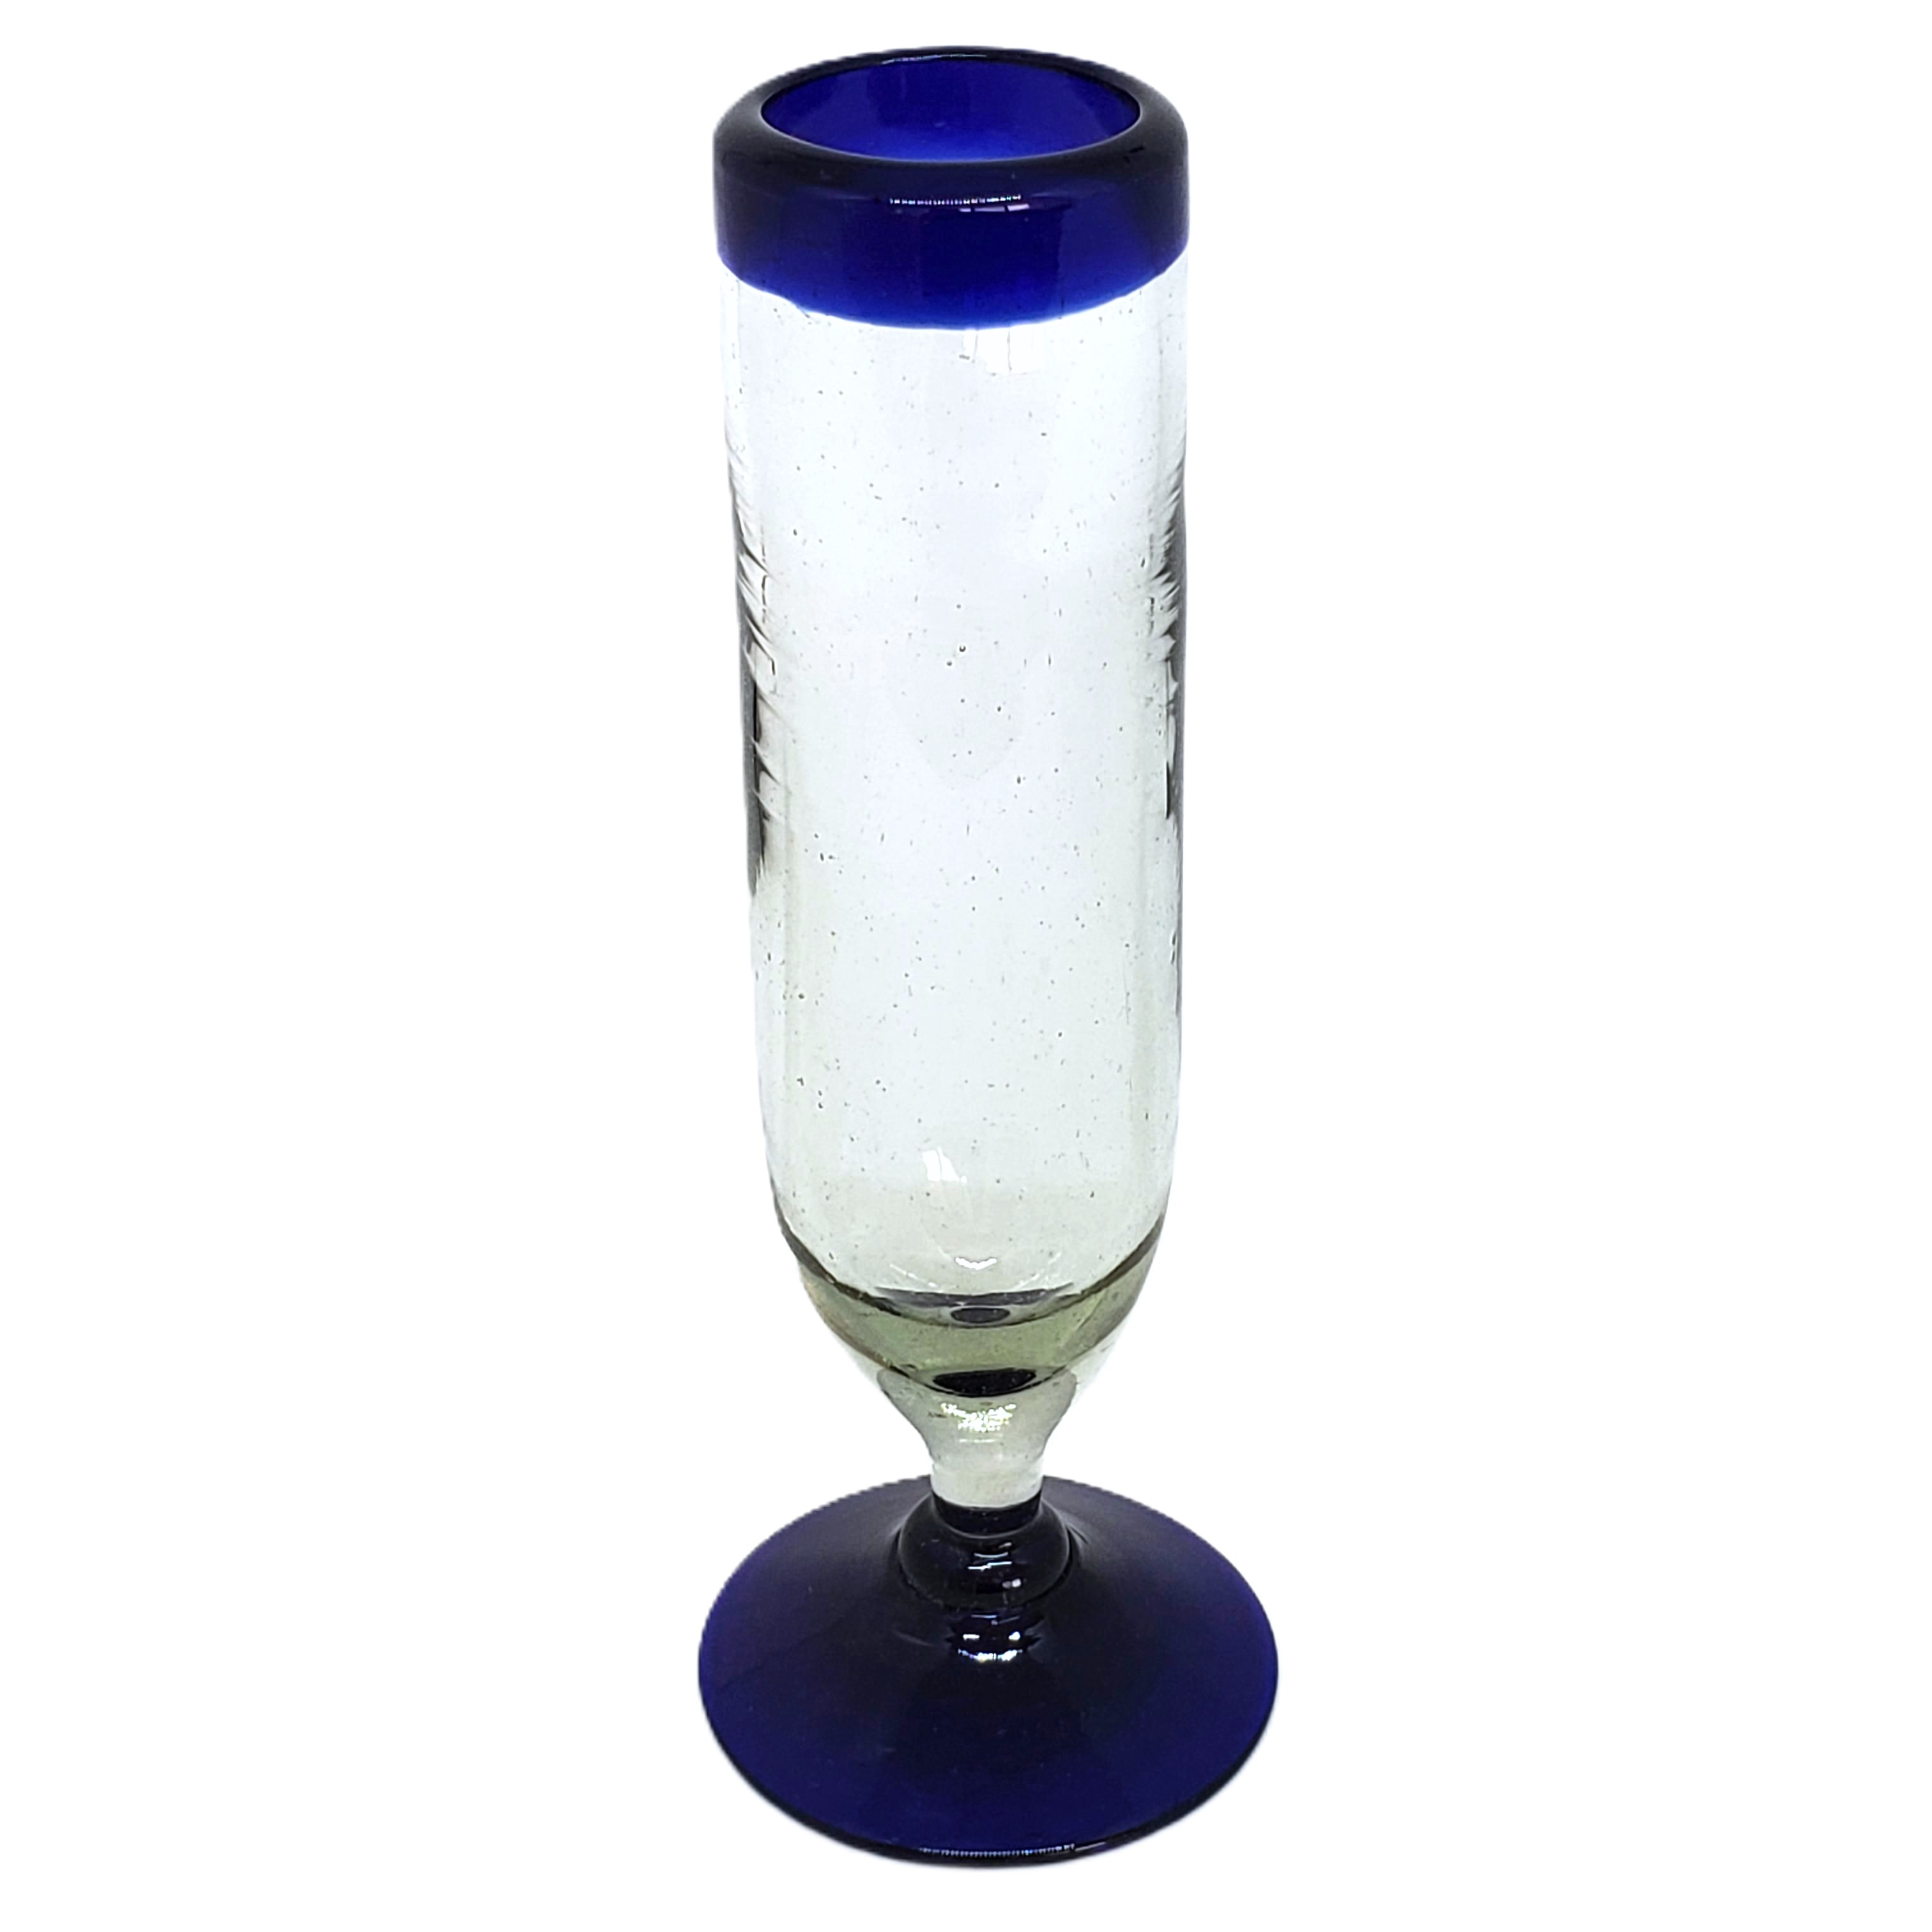 Cobalt Blue Rim 6 oz Champagne Flutes (set of 6)